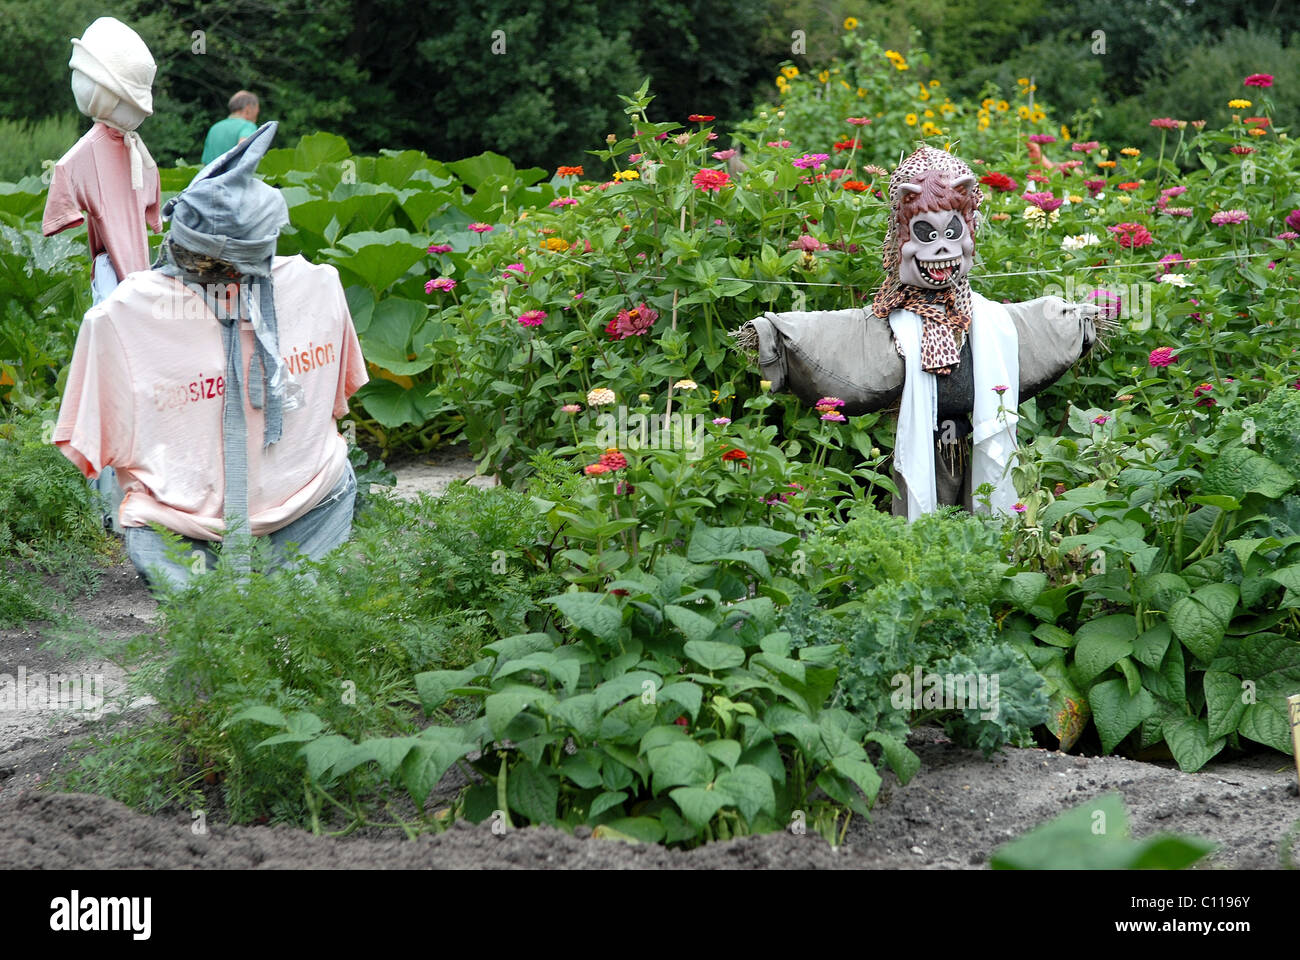 Scarecrows in garden Stock Photo